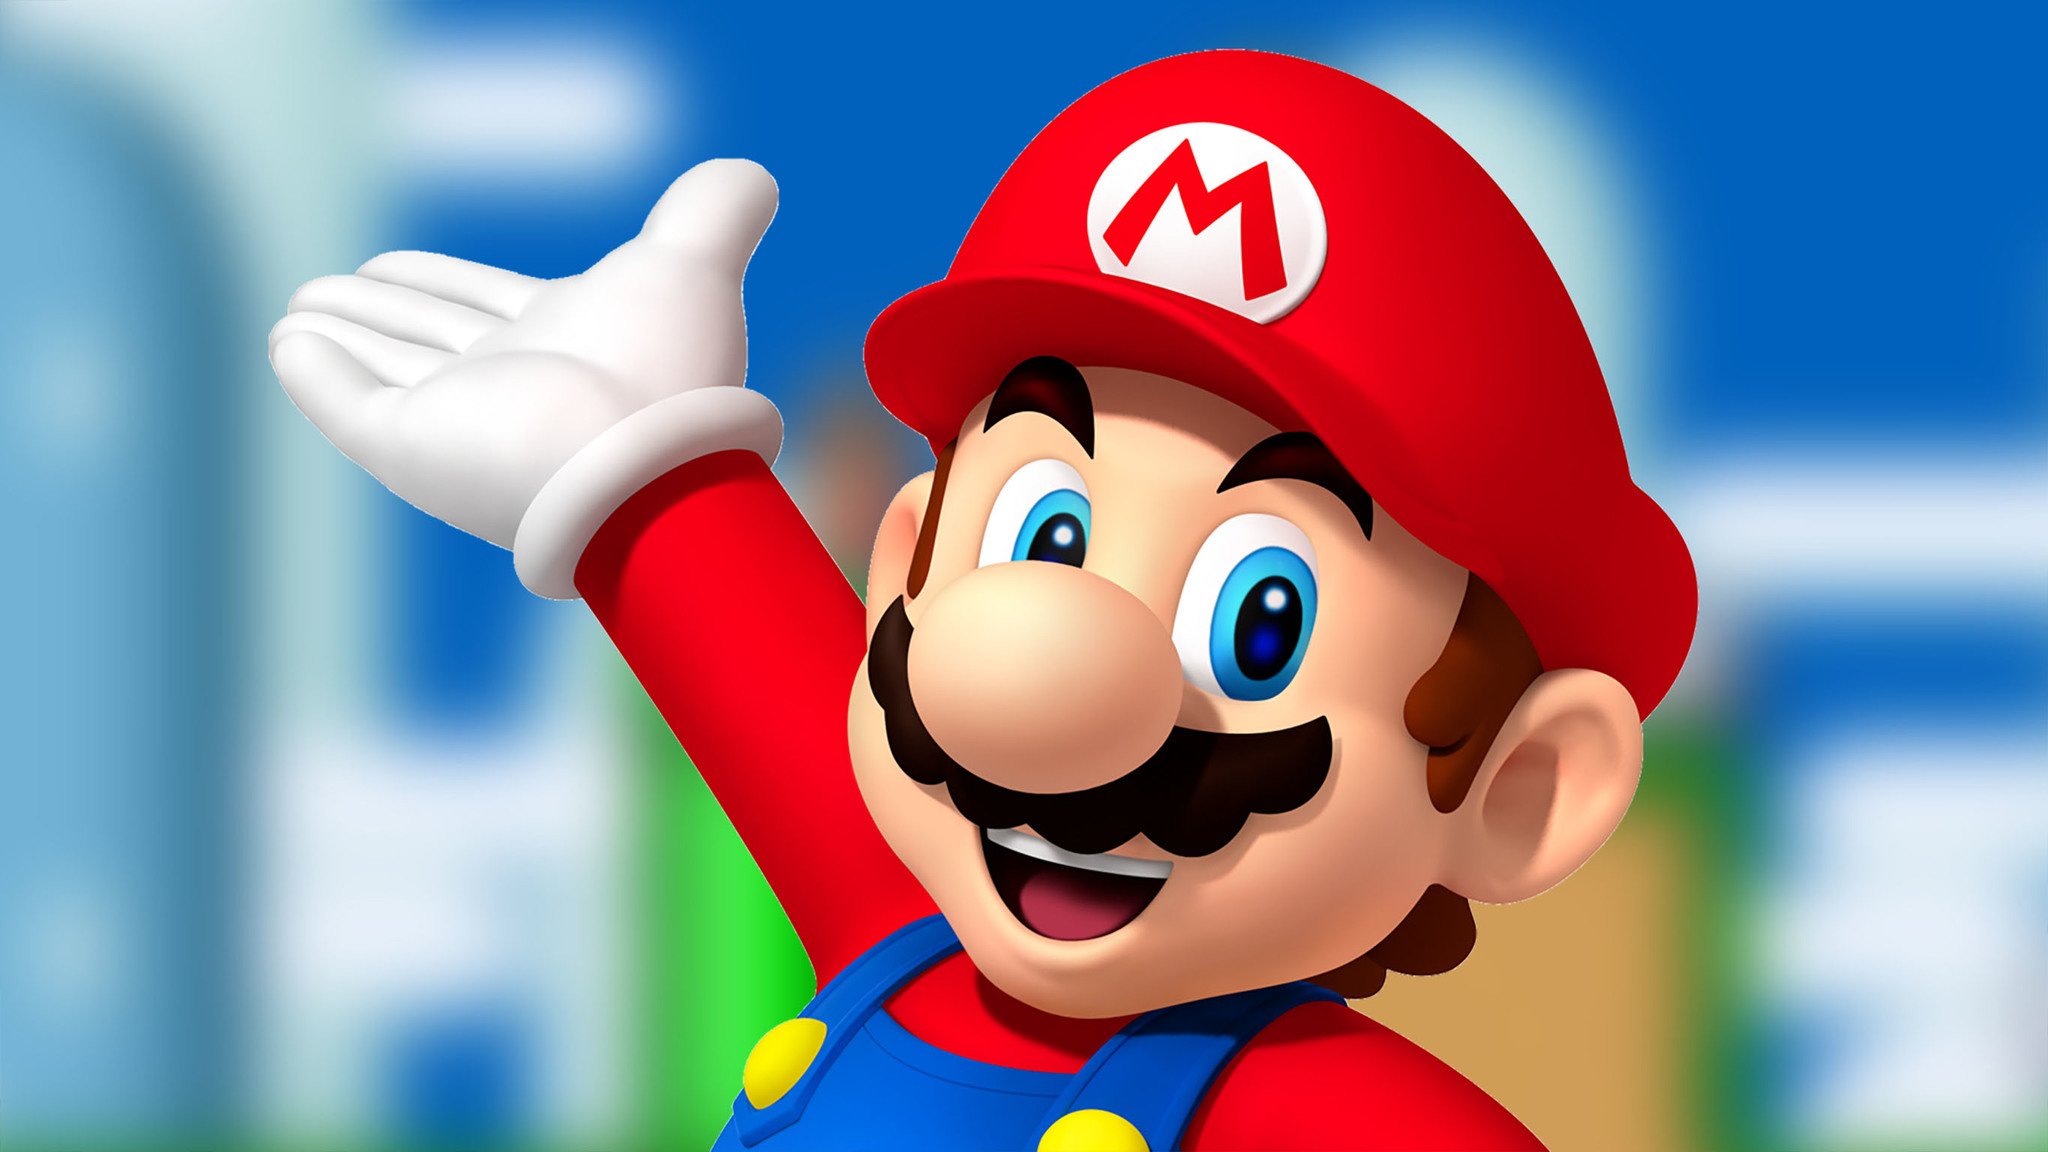 17 Facts About Mario (Super Mario Bros.) 